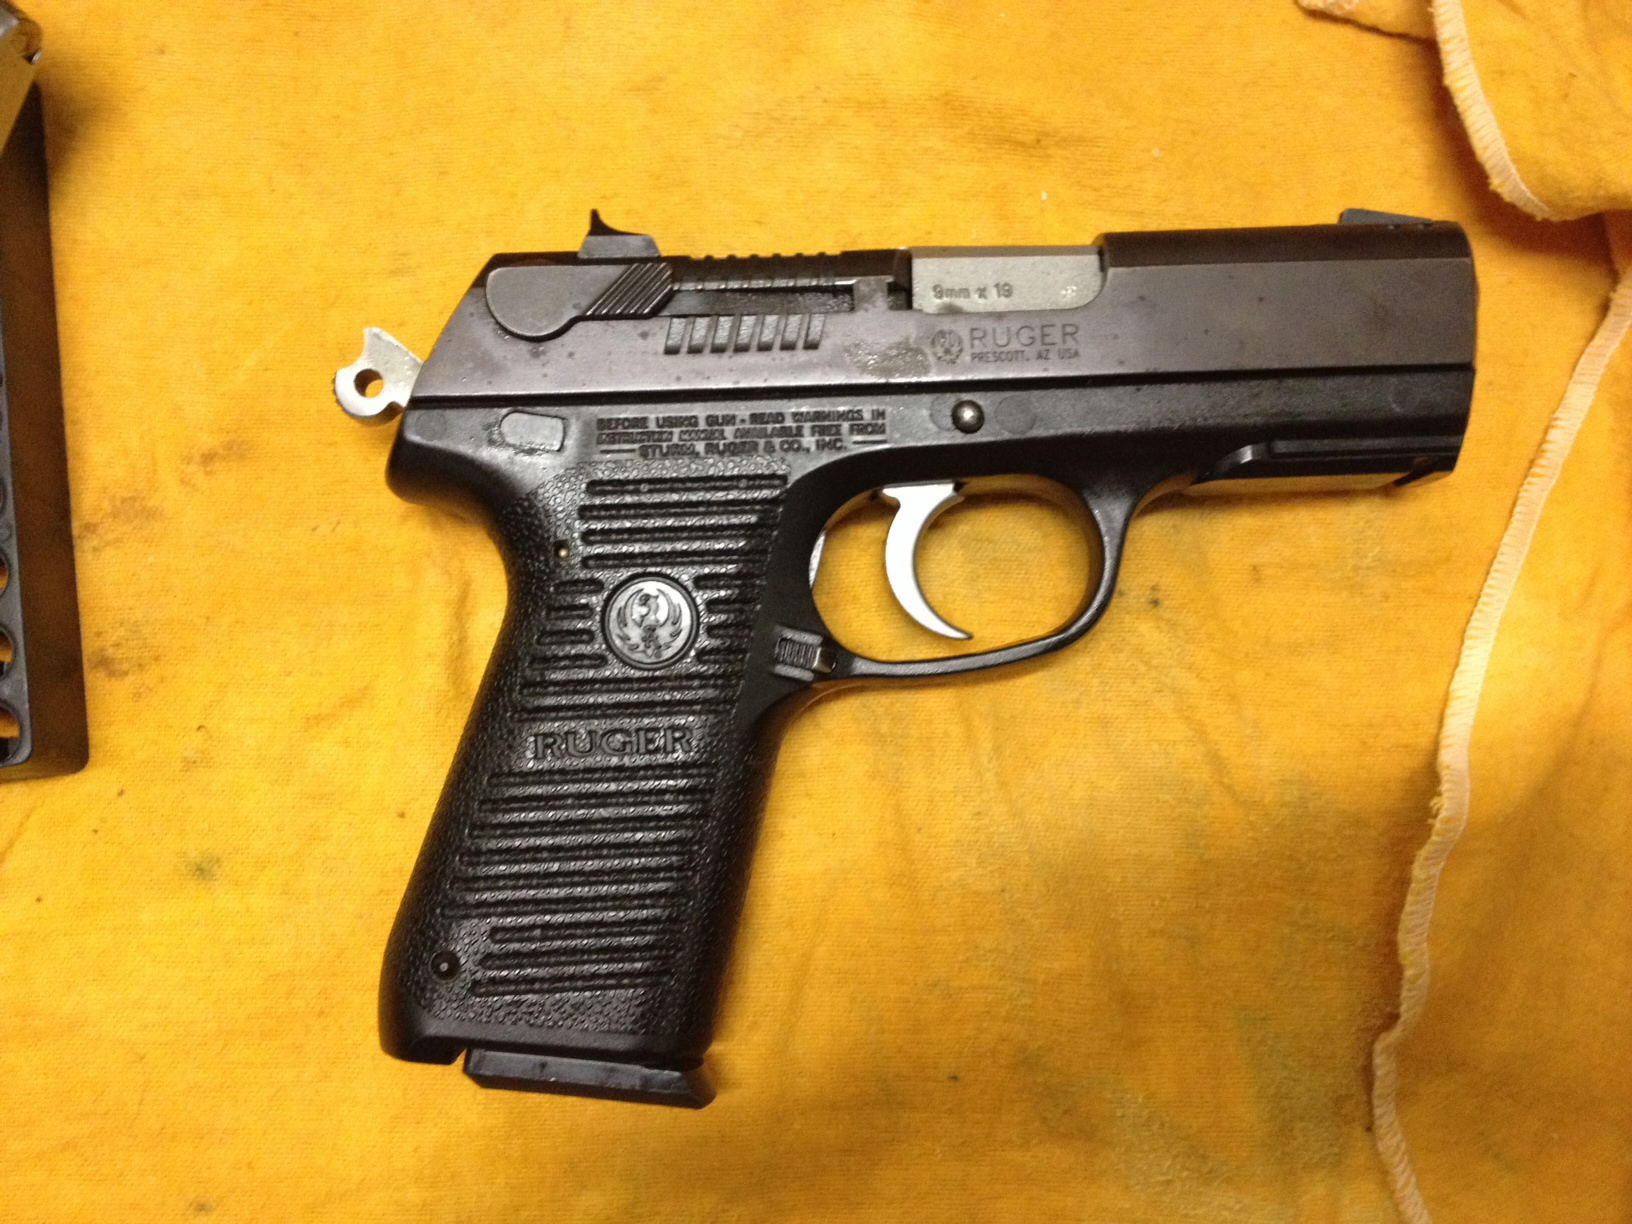 A pistola apreendida é de uso restrito das forças armadas e policiais (Foto: Divulgação)